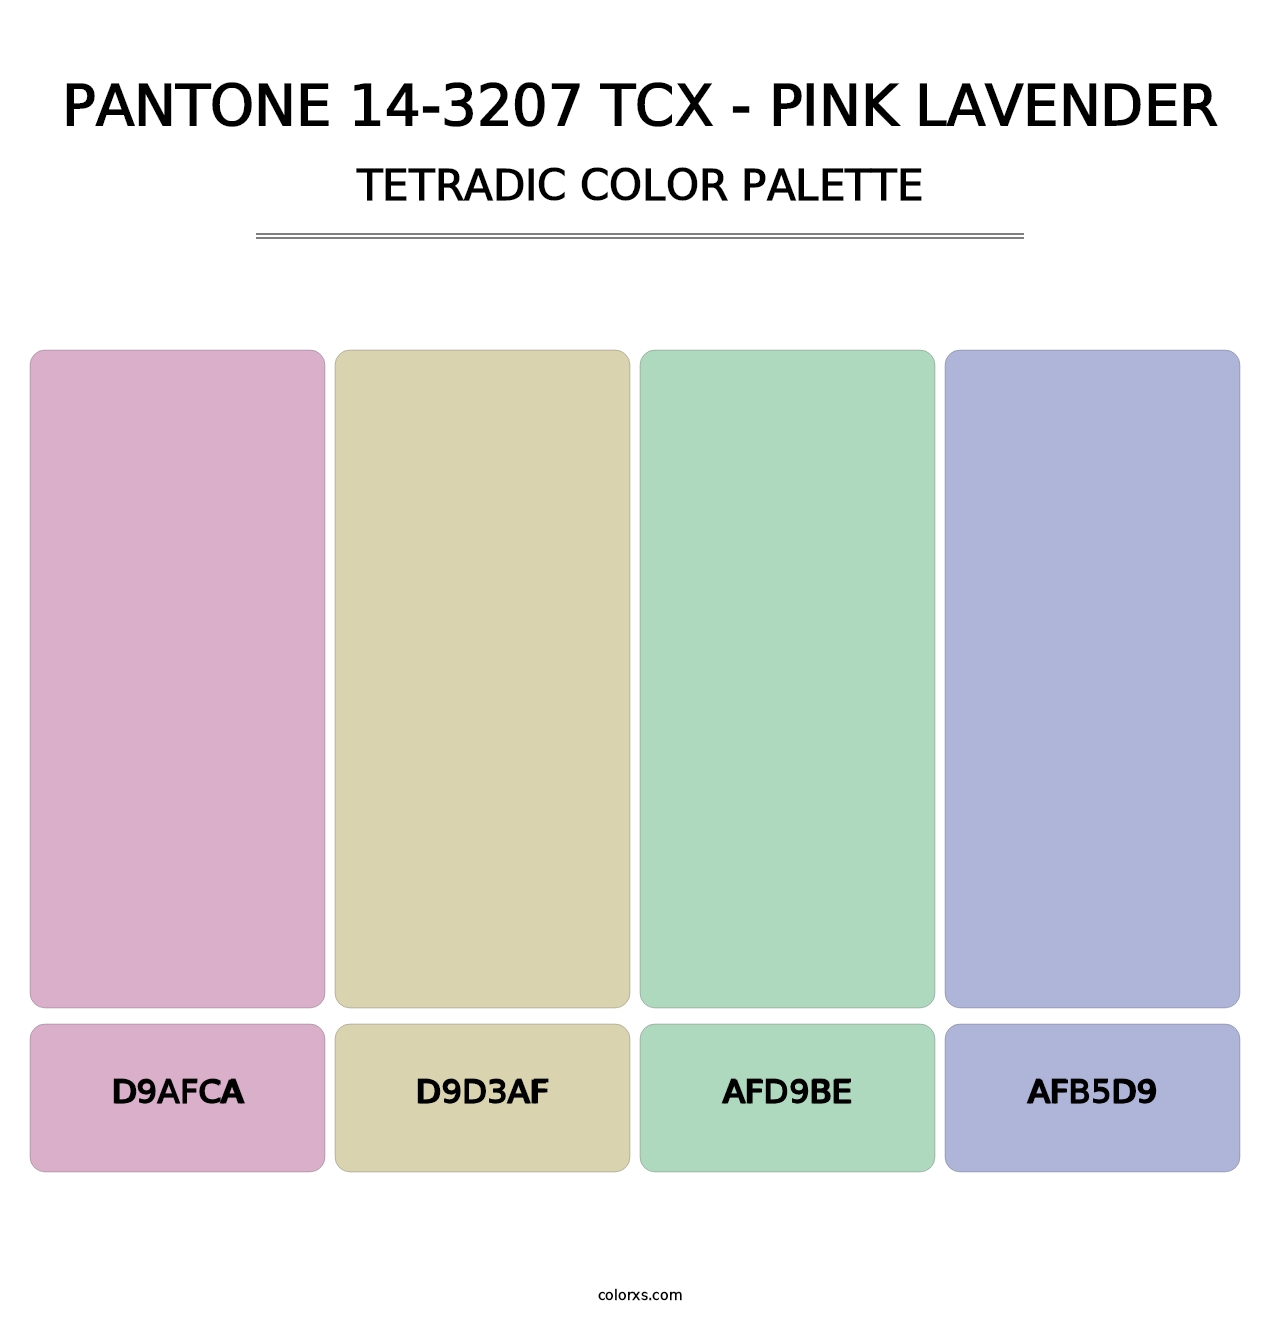 PANTONE 14-3207 TCX - Pink Lavender - Tetradic Color Palette